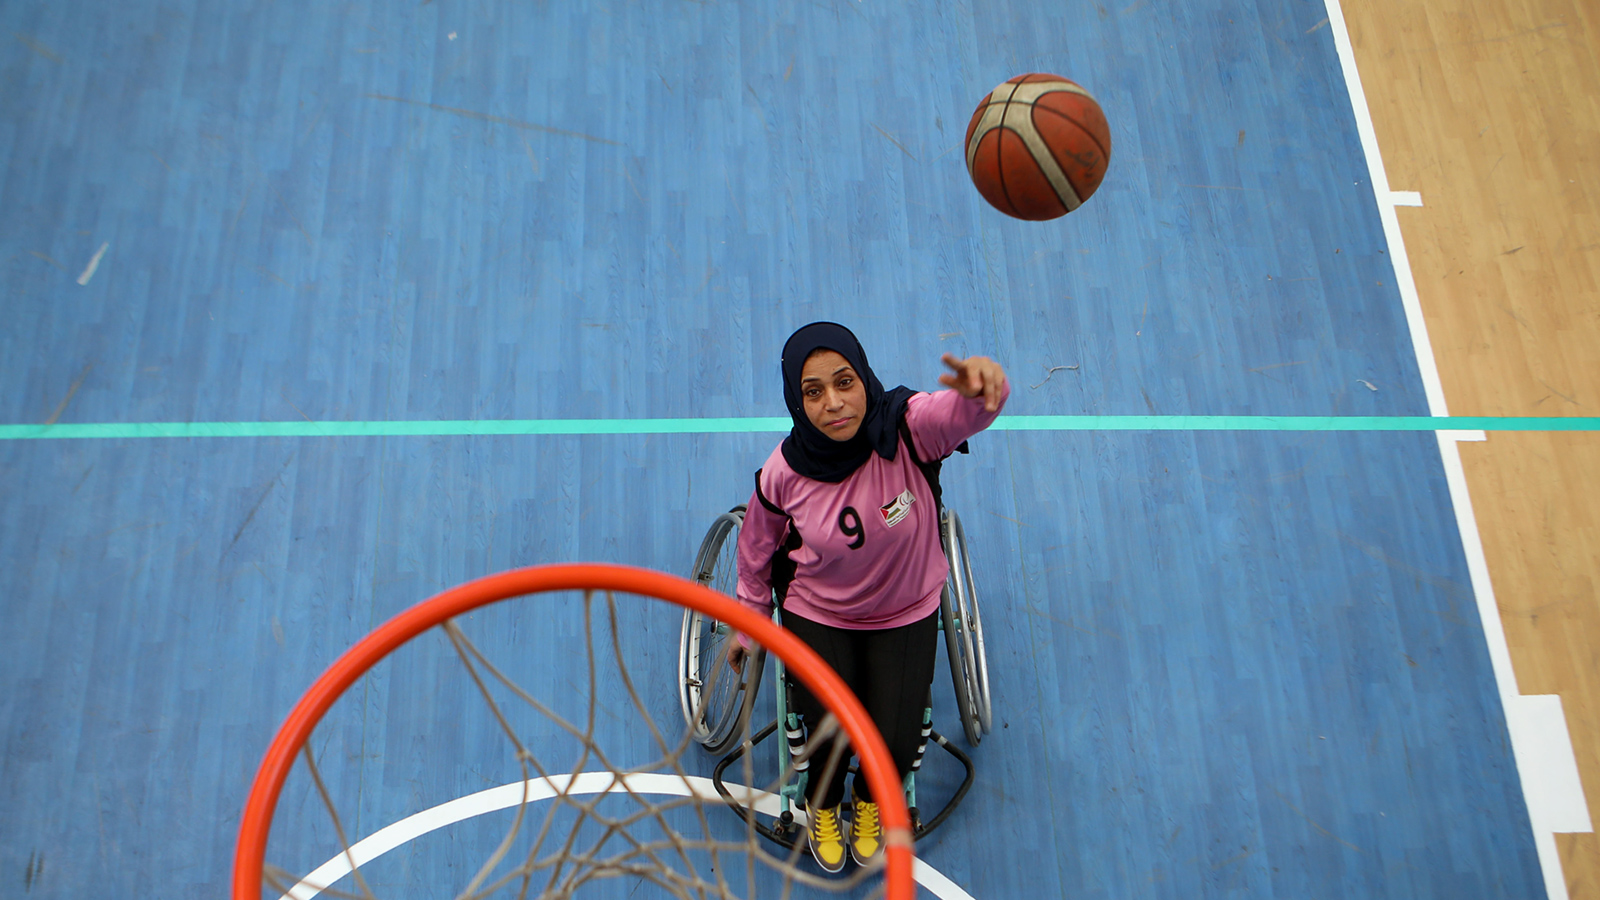 منى خطاب شاركت في تأسيس أول فريق كرة سلة لذوي الإعاقة بقطاع غزة (الجزيرة)